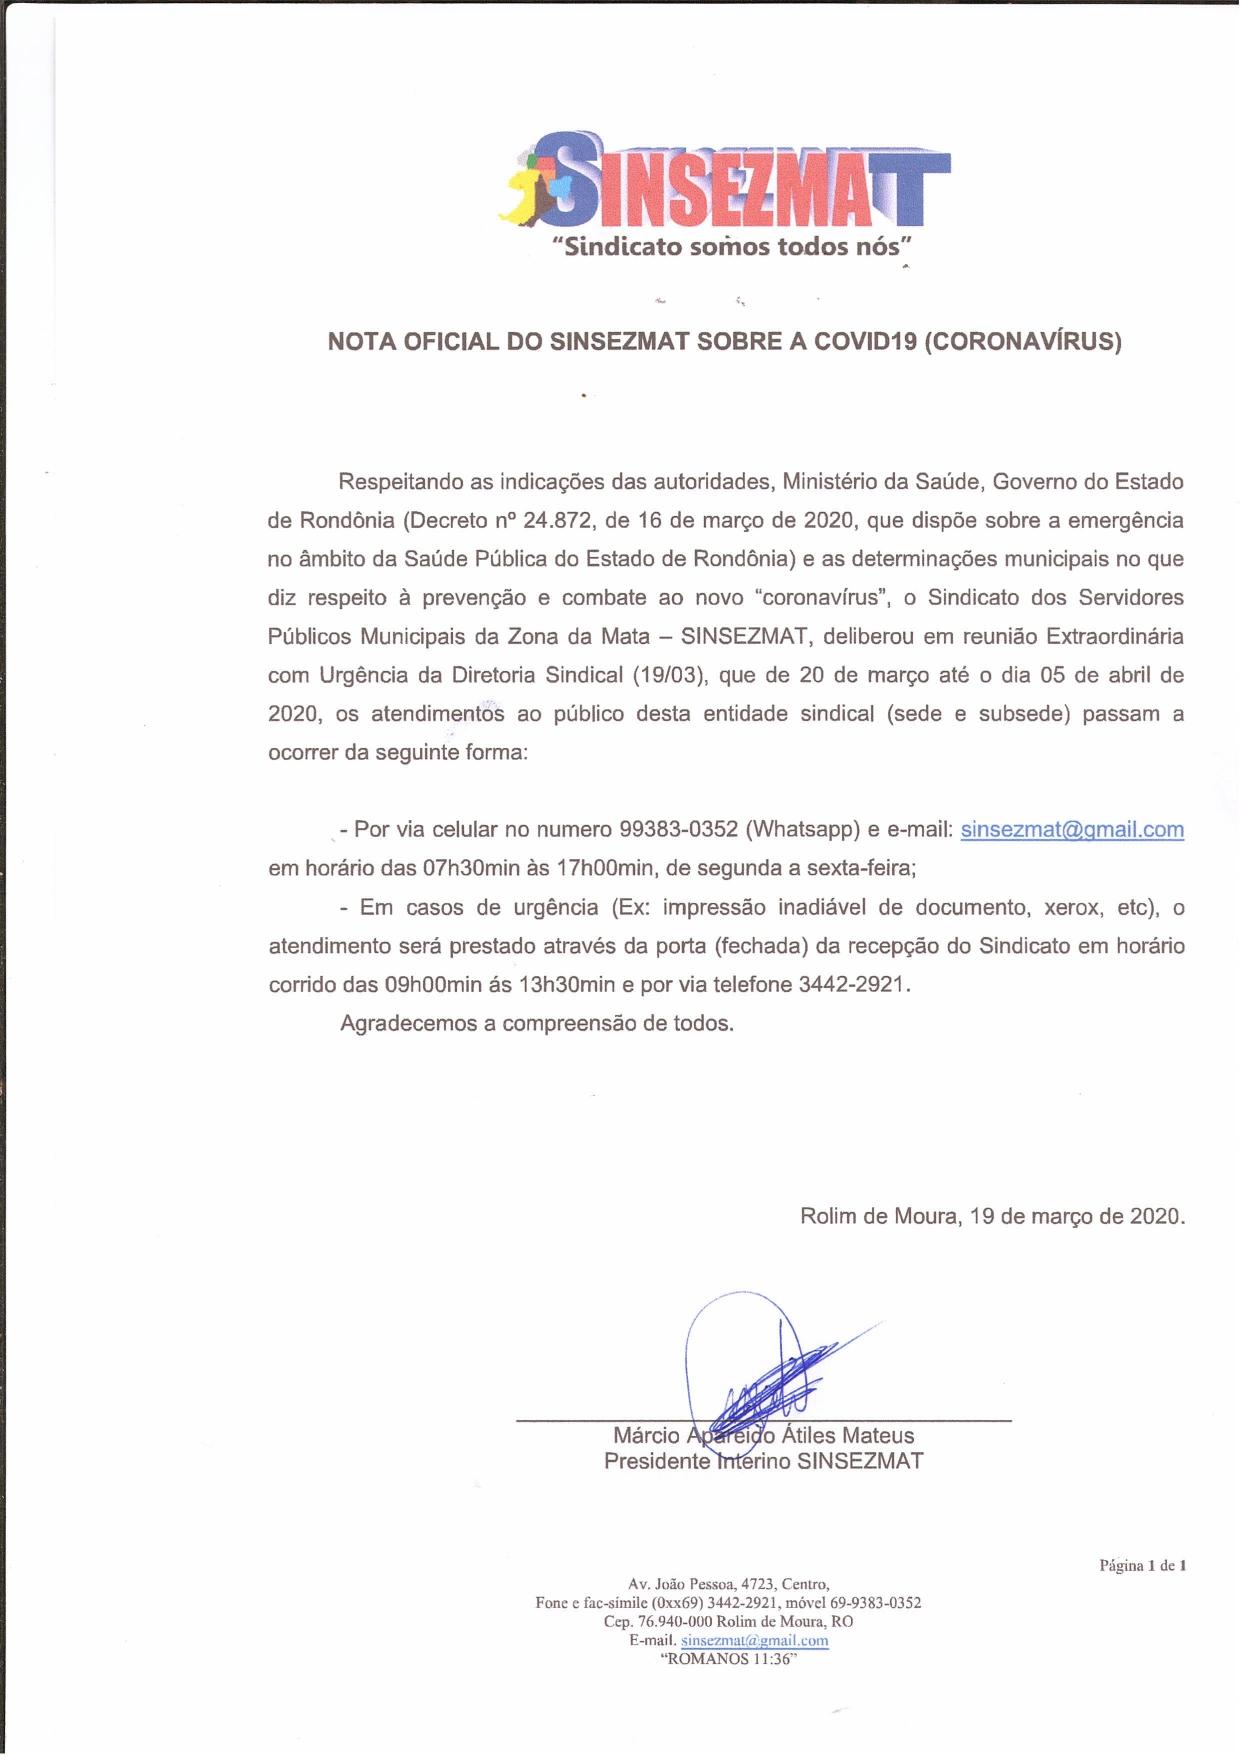  NOTA OFICIAL DO SINSEZMAT SOBRE A COVID19 (CORONAVÍRUS)